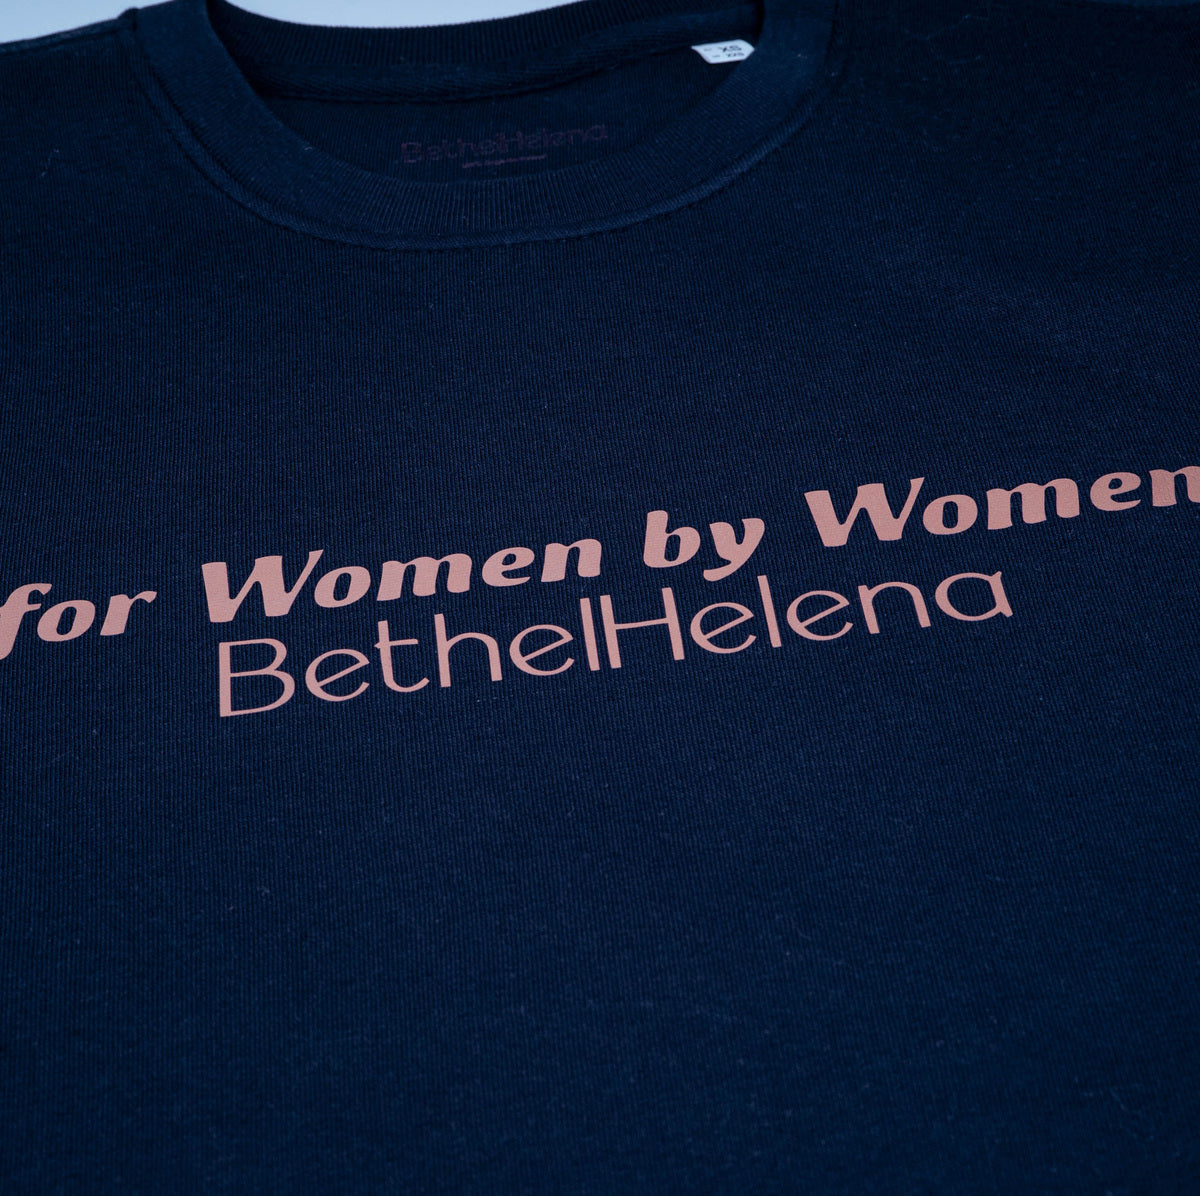 For Women by Women Sweatshirt